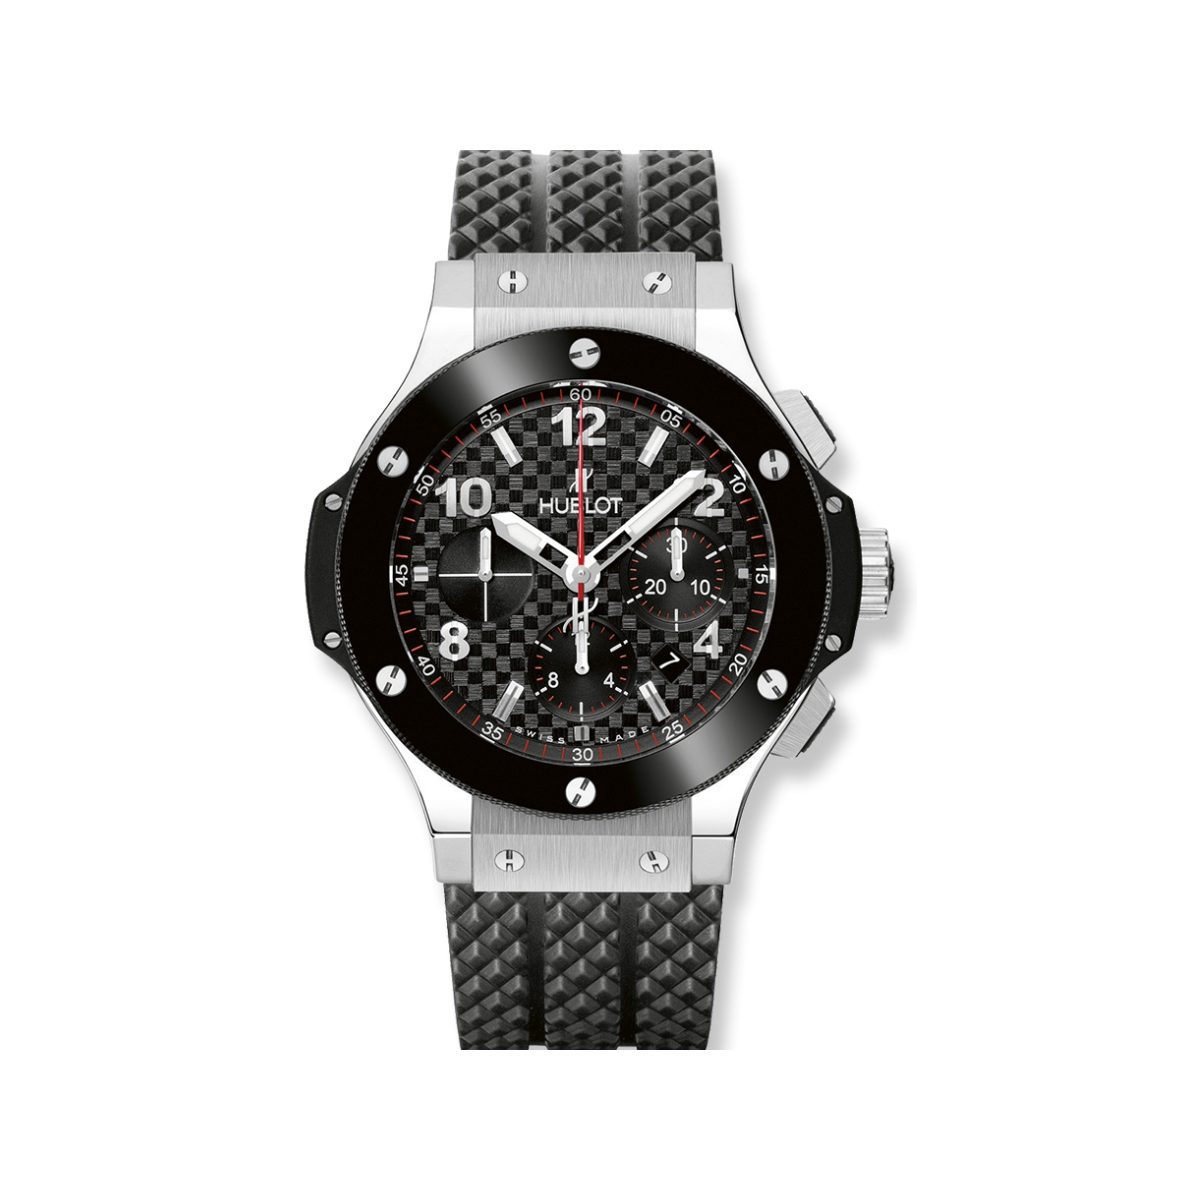 Hublot Big Bang MP-09 Limited Edition Swiss Automatic Watch